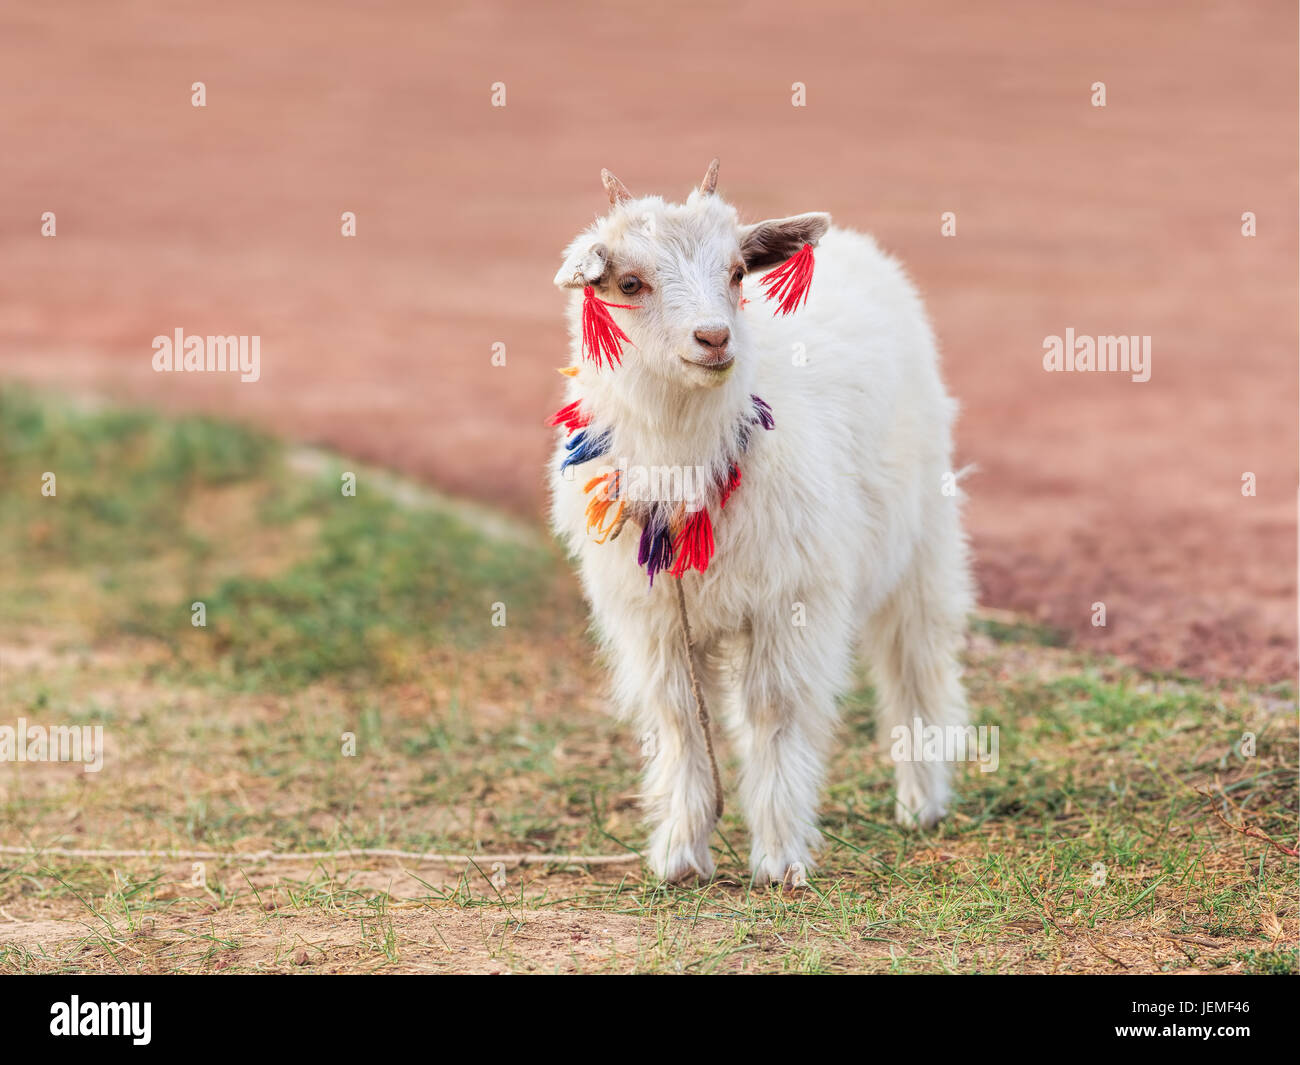 Jolie petite chèvre blanche avec des ornements tibétain Banque D'Images